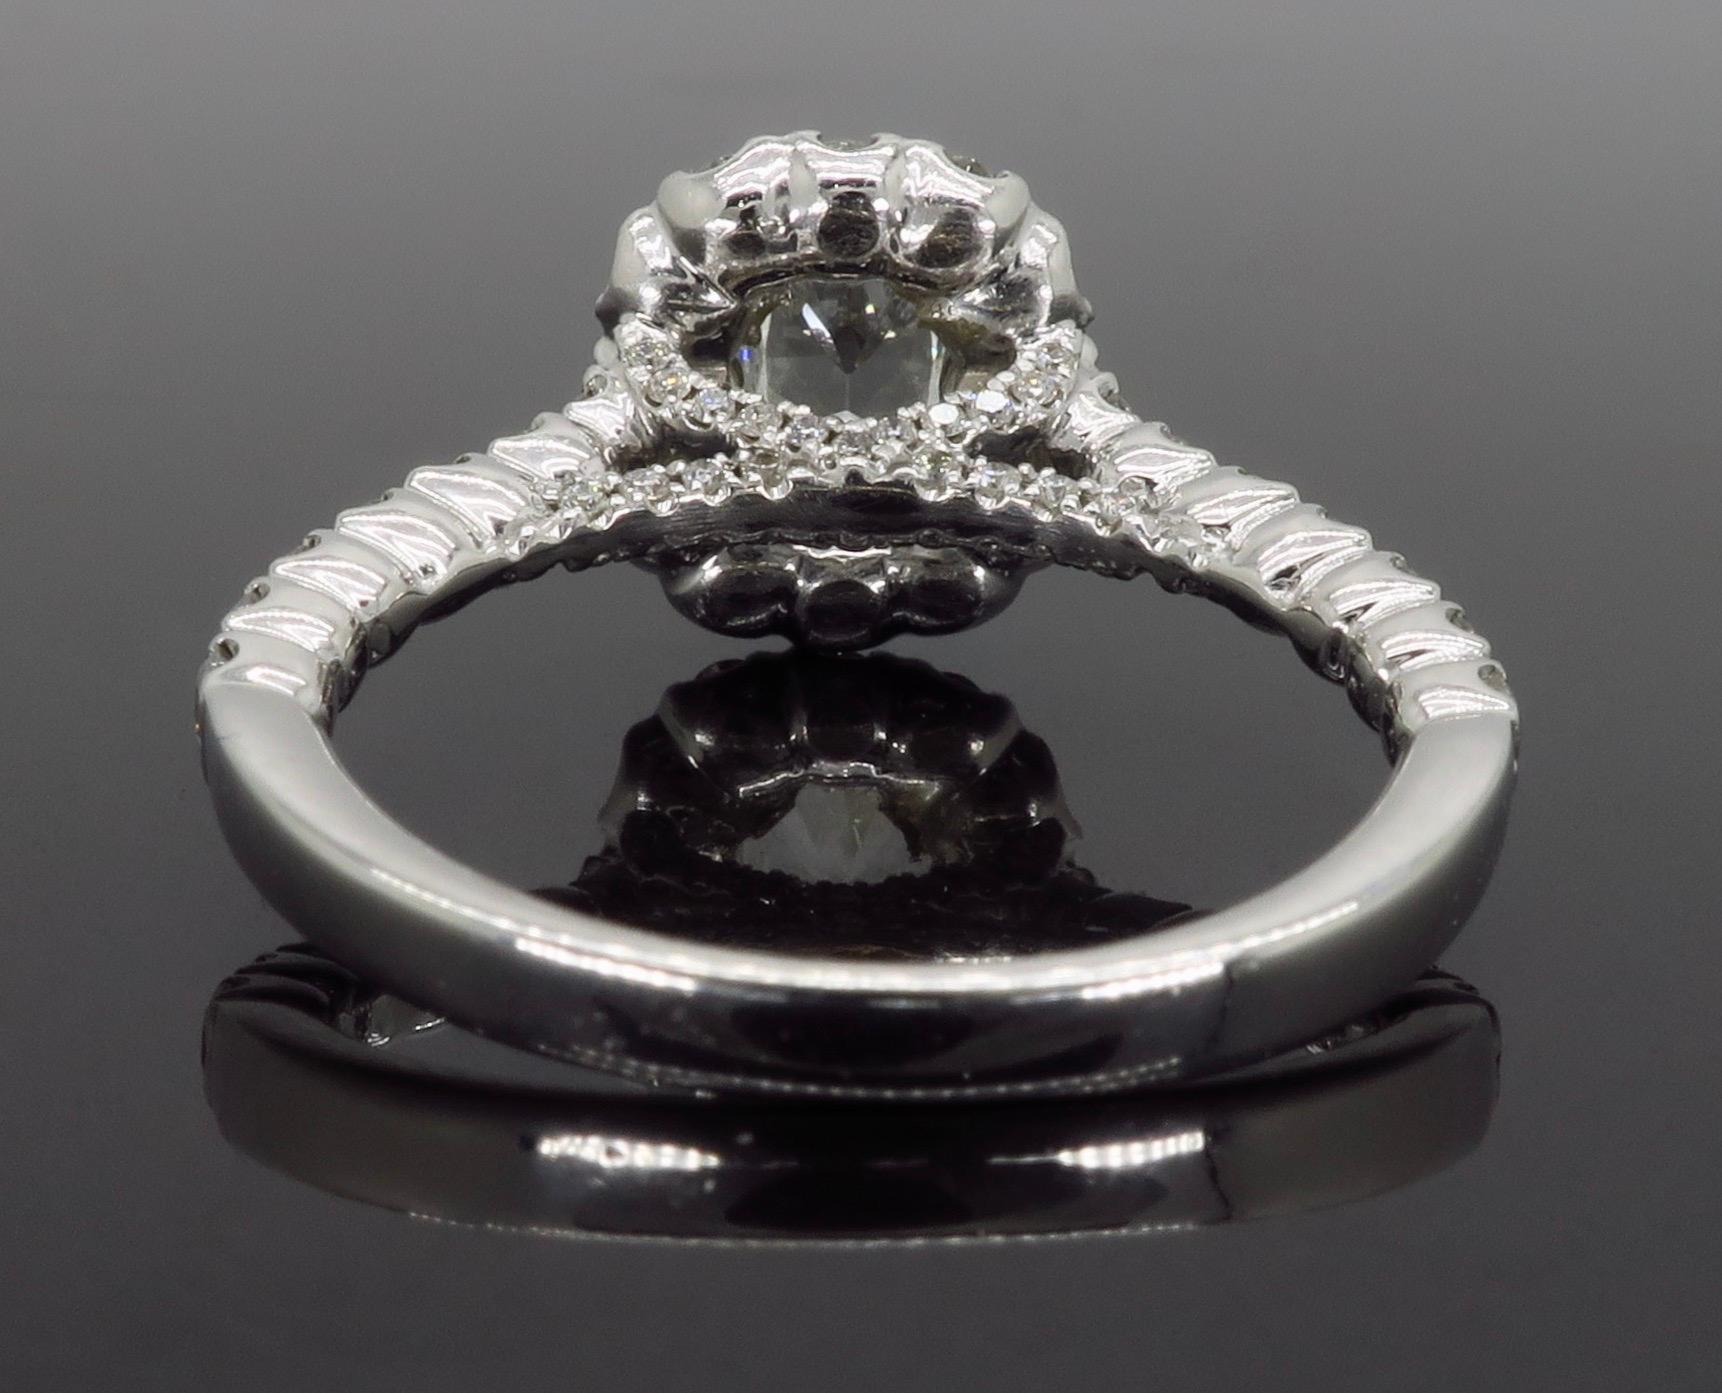 Henri Daussi Signature Halo Diamond Engagement Ring in 18 Karat White Gold 3